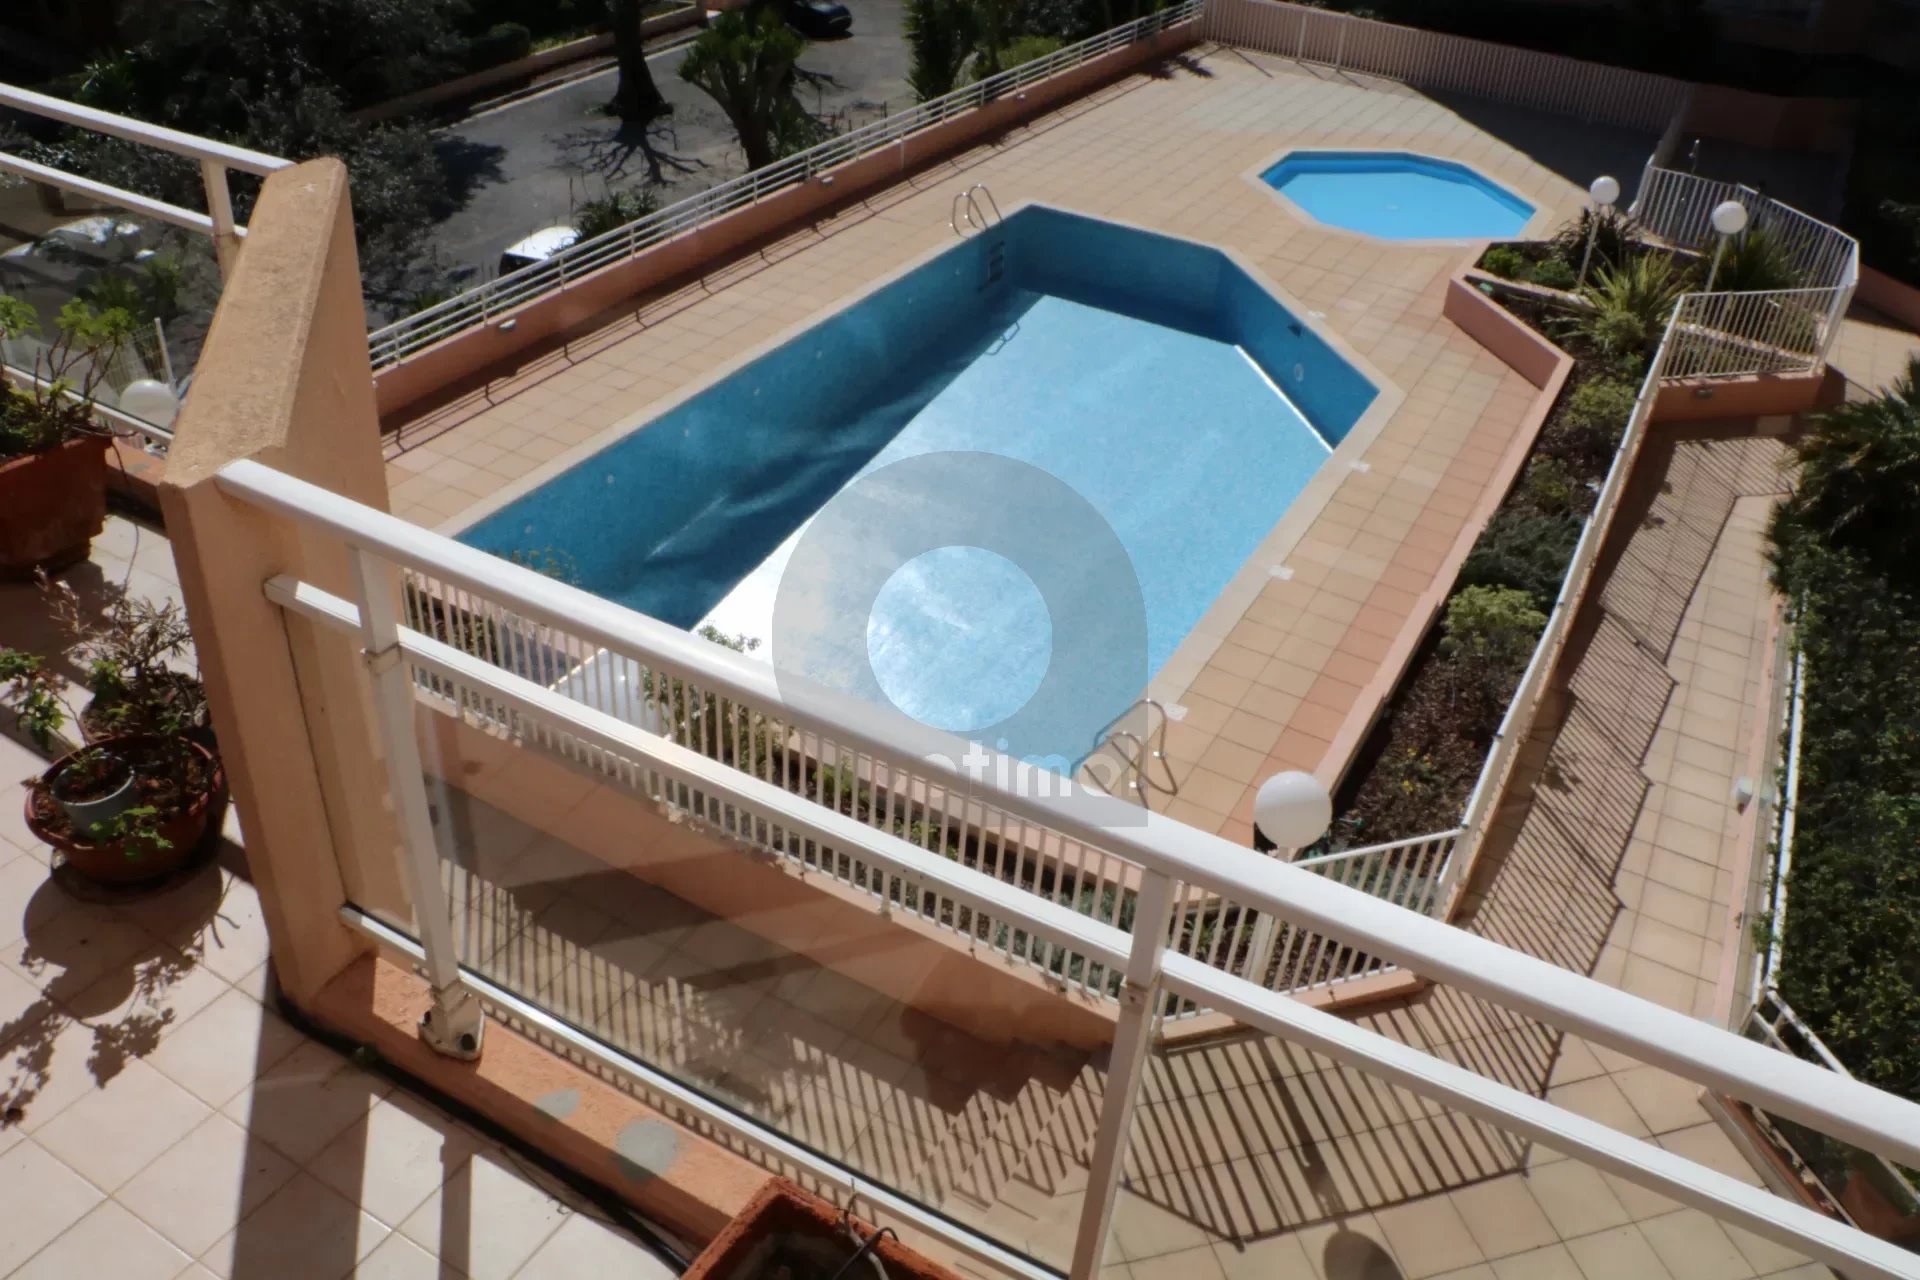 Roquebrune Cap Martin, belle résidence avec piscine, beau 3 pièces avec garage secteur prisé de Carnoles a 50m des plages